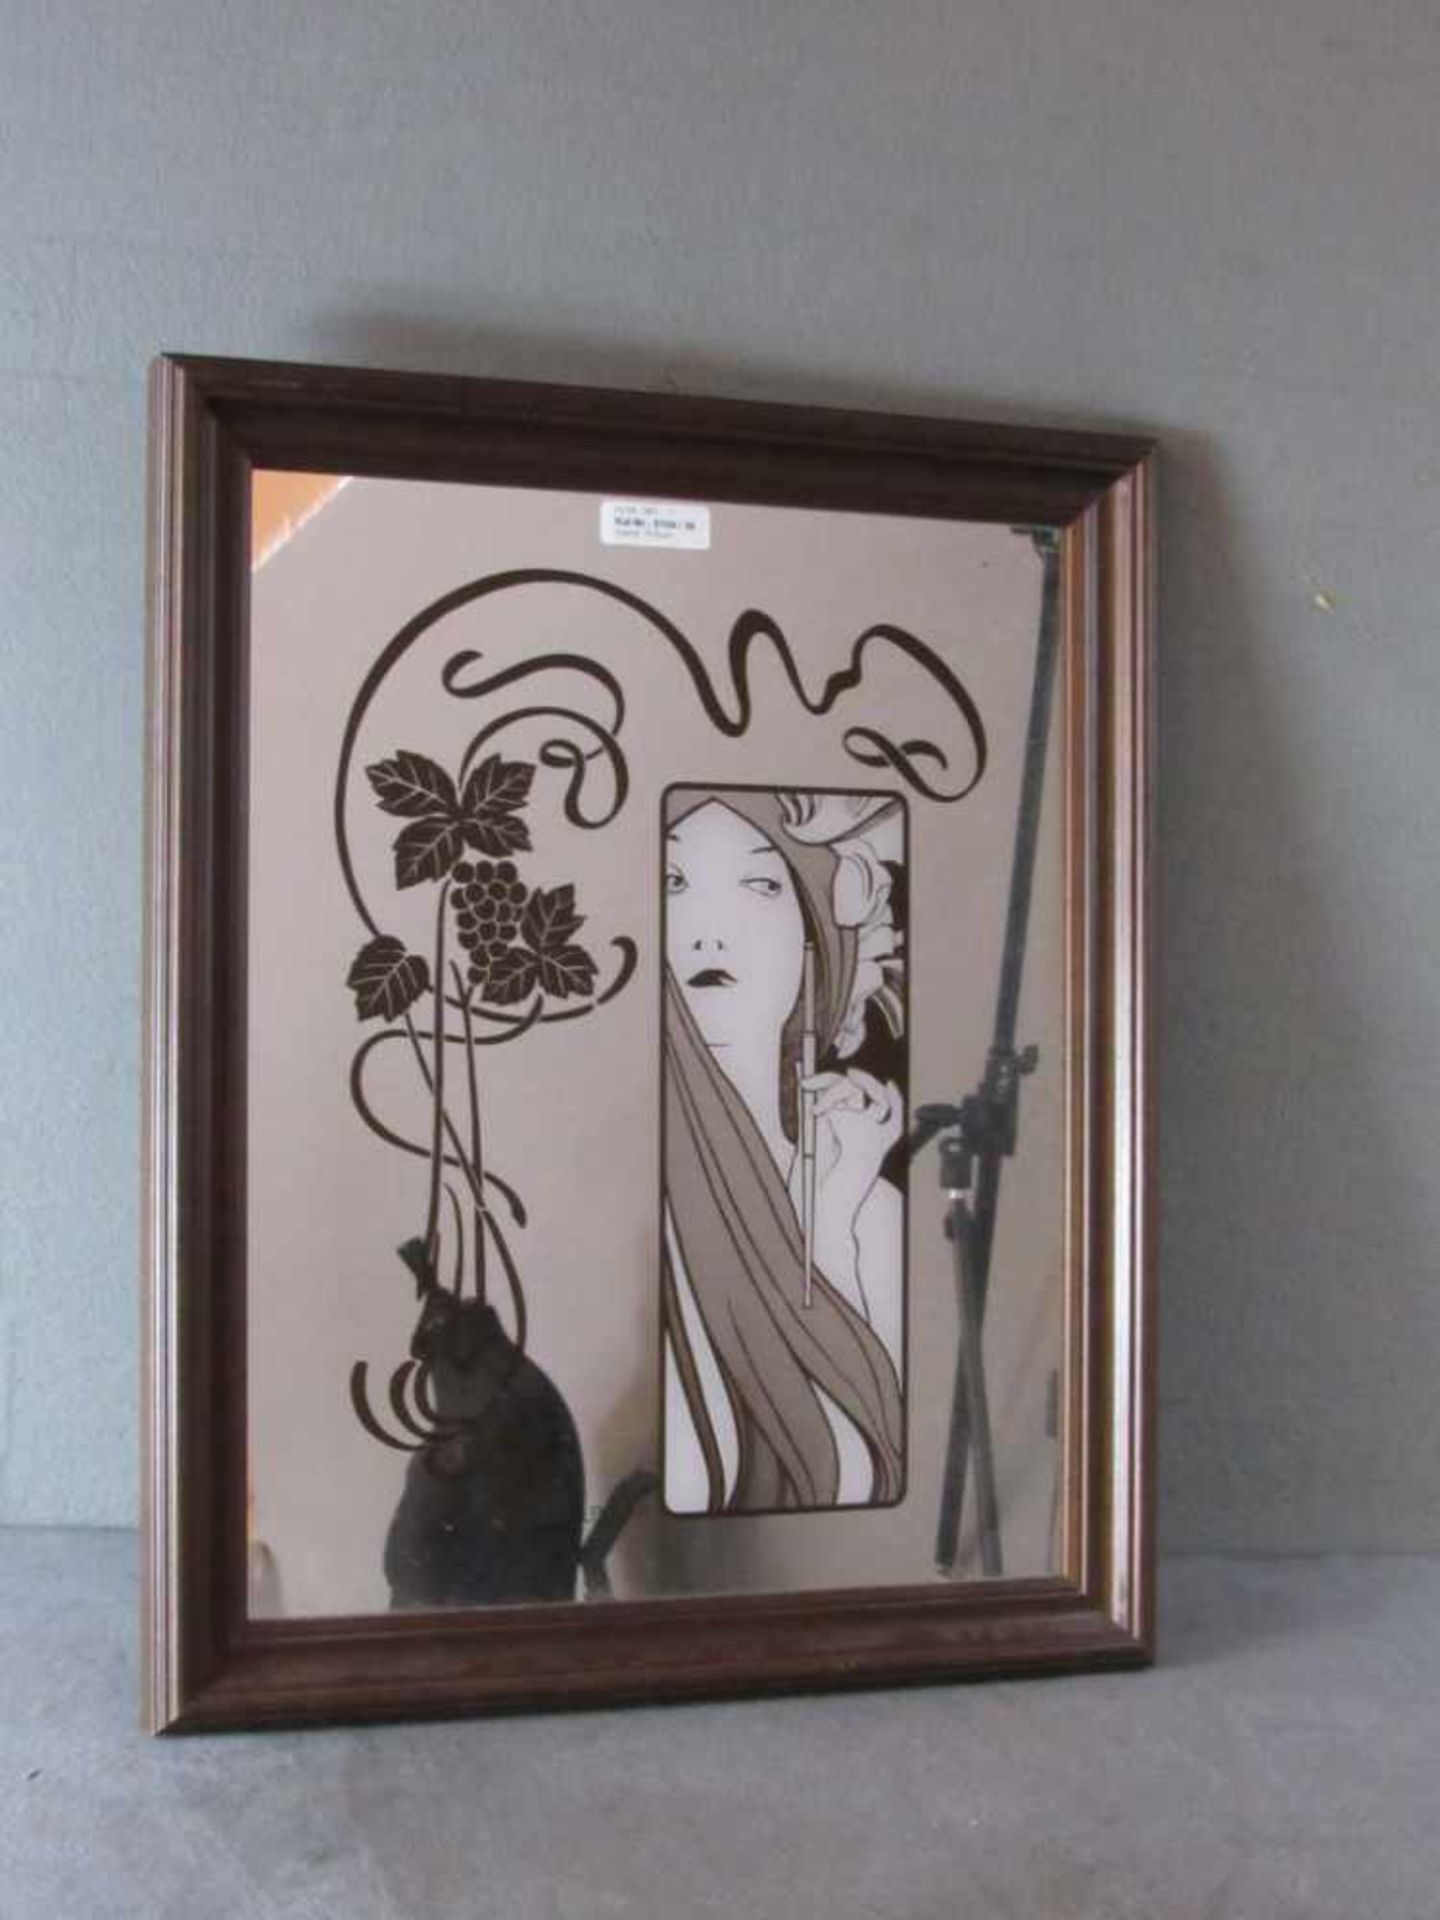 Reproduktion eines Wella Werbespiegels aus der Zeit des Jugendstils/Art Nouveau. Maße 49 x 39 cm